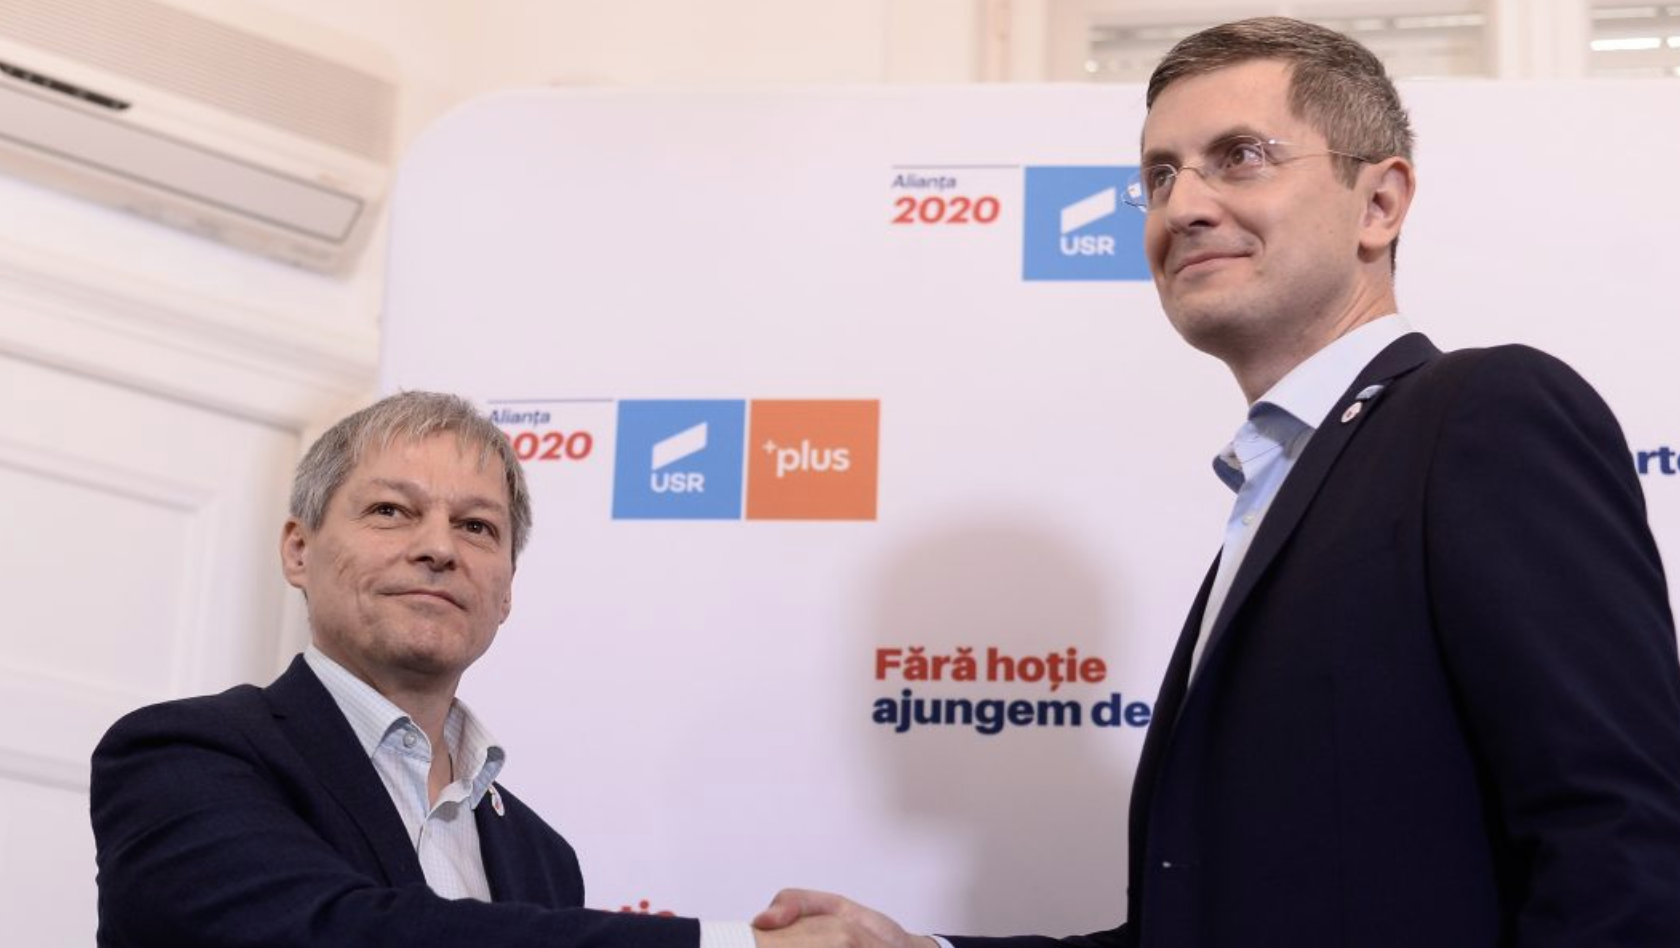 SONDAJ. Cioloș sau Barna? Cine e mai vinovat pentru marele scandal din USR?